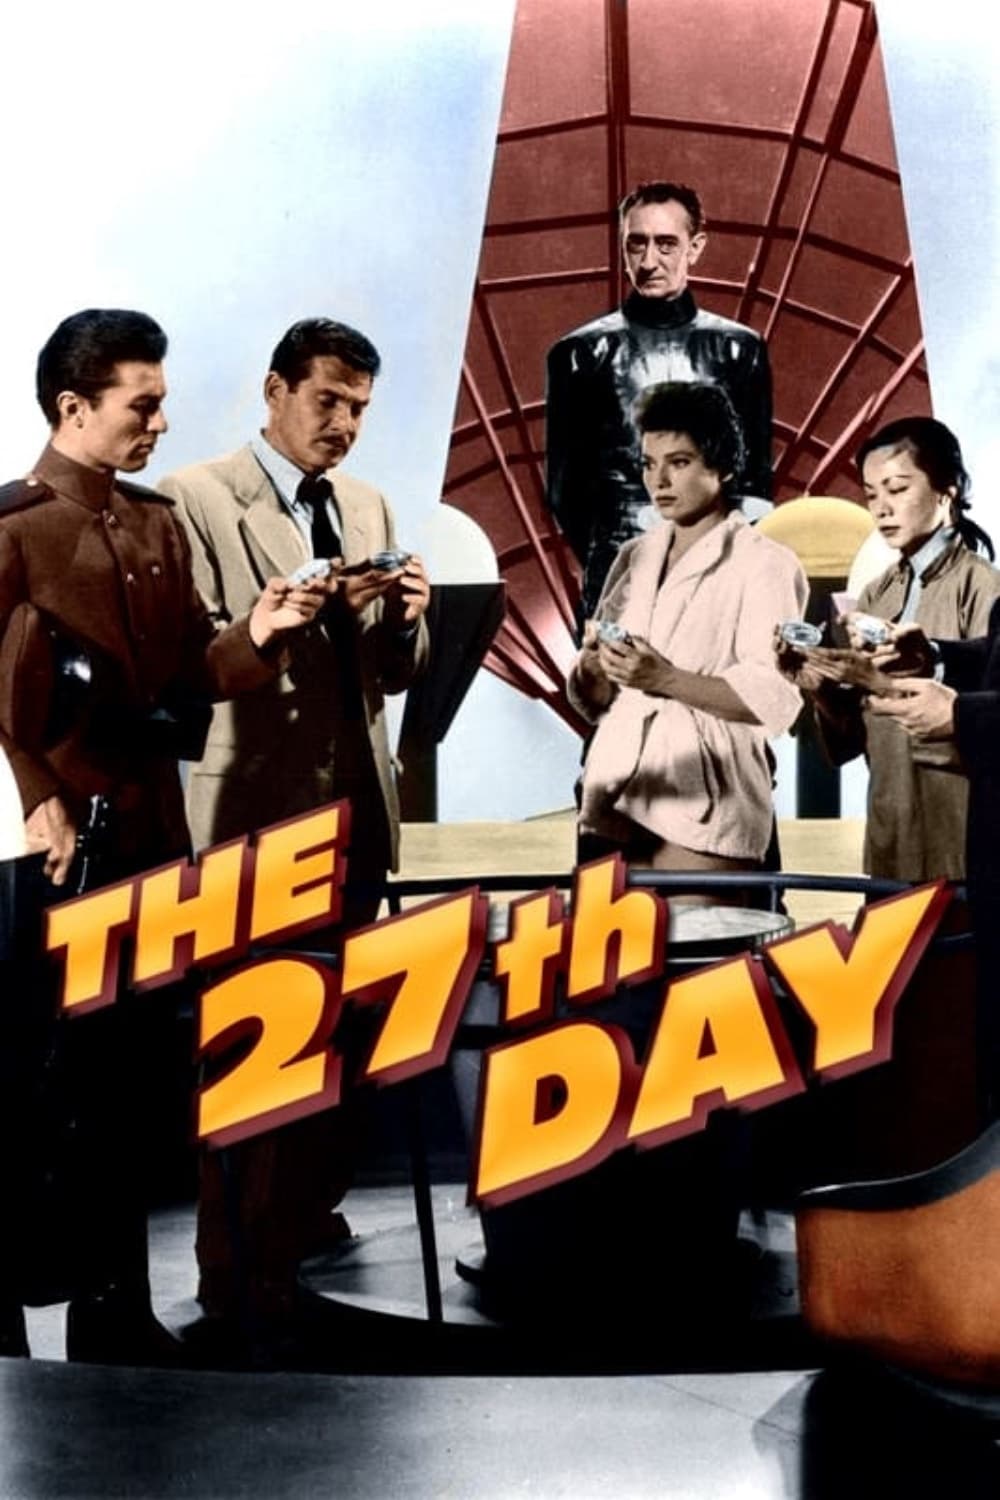 El Día 27 (1957)